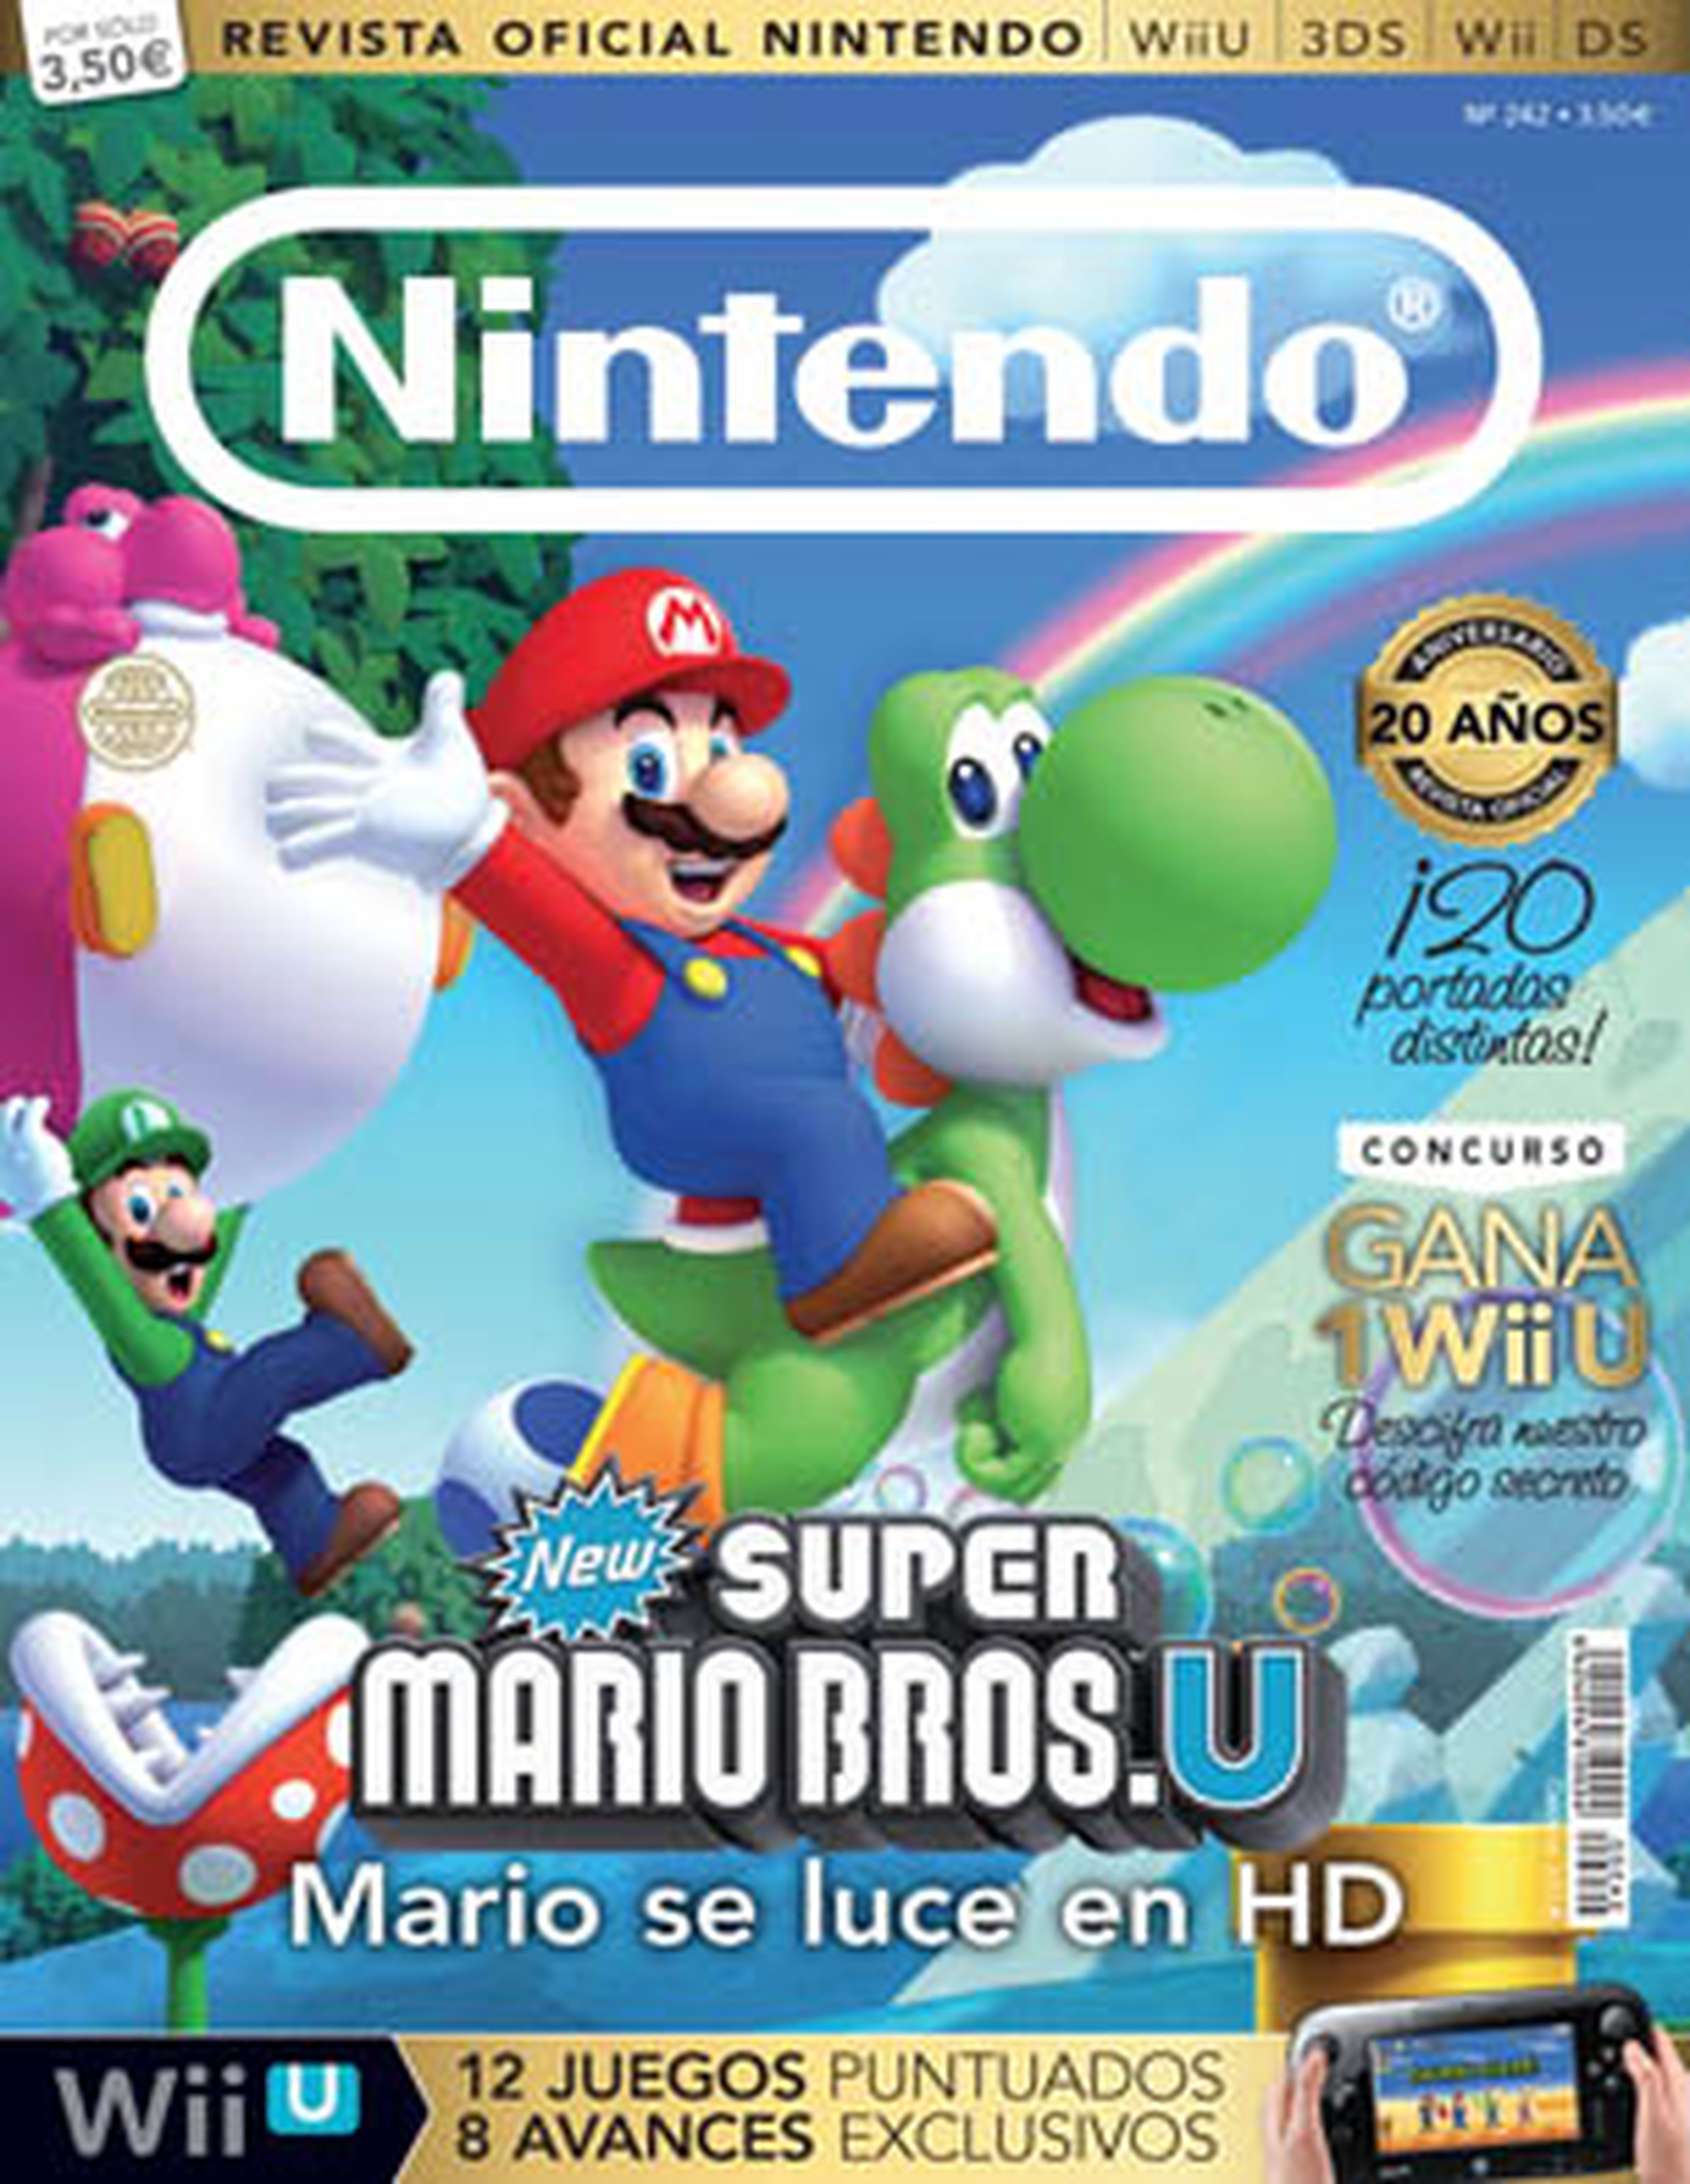 20 años de Revista Oficial, 20 portadas de Wii U